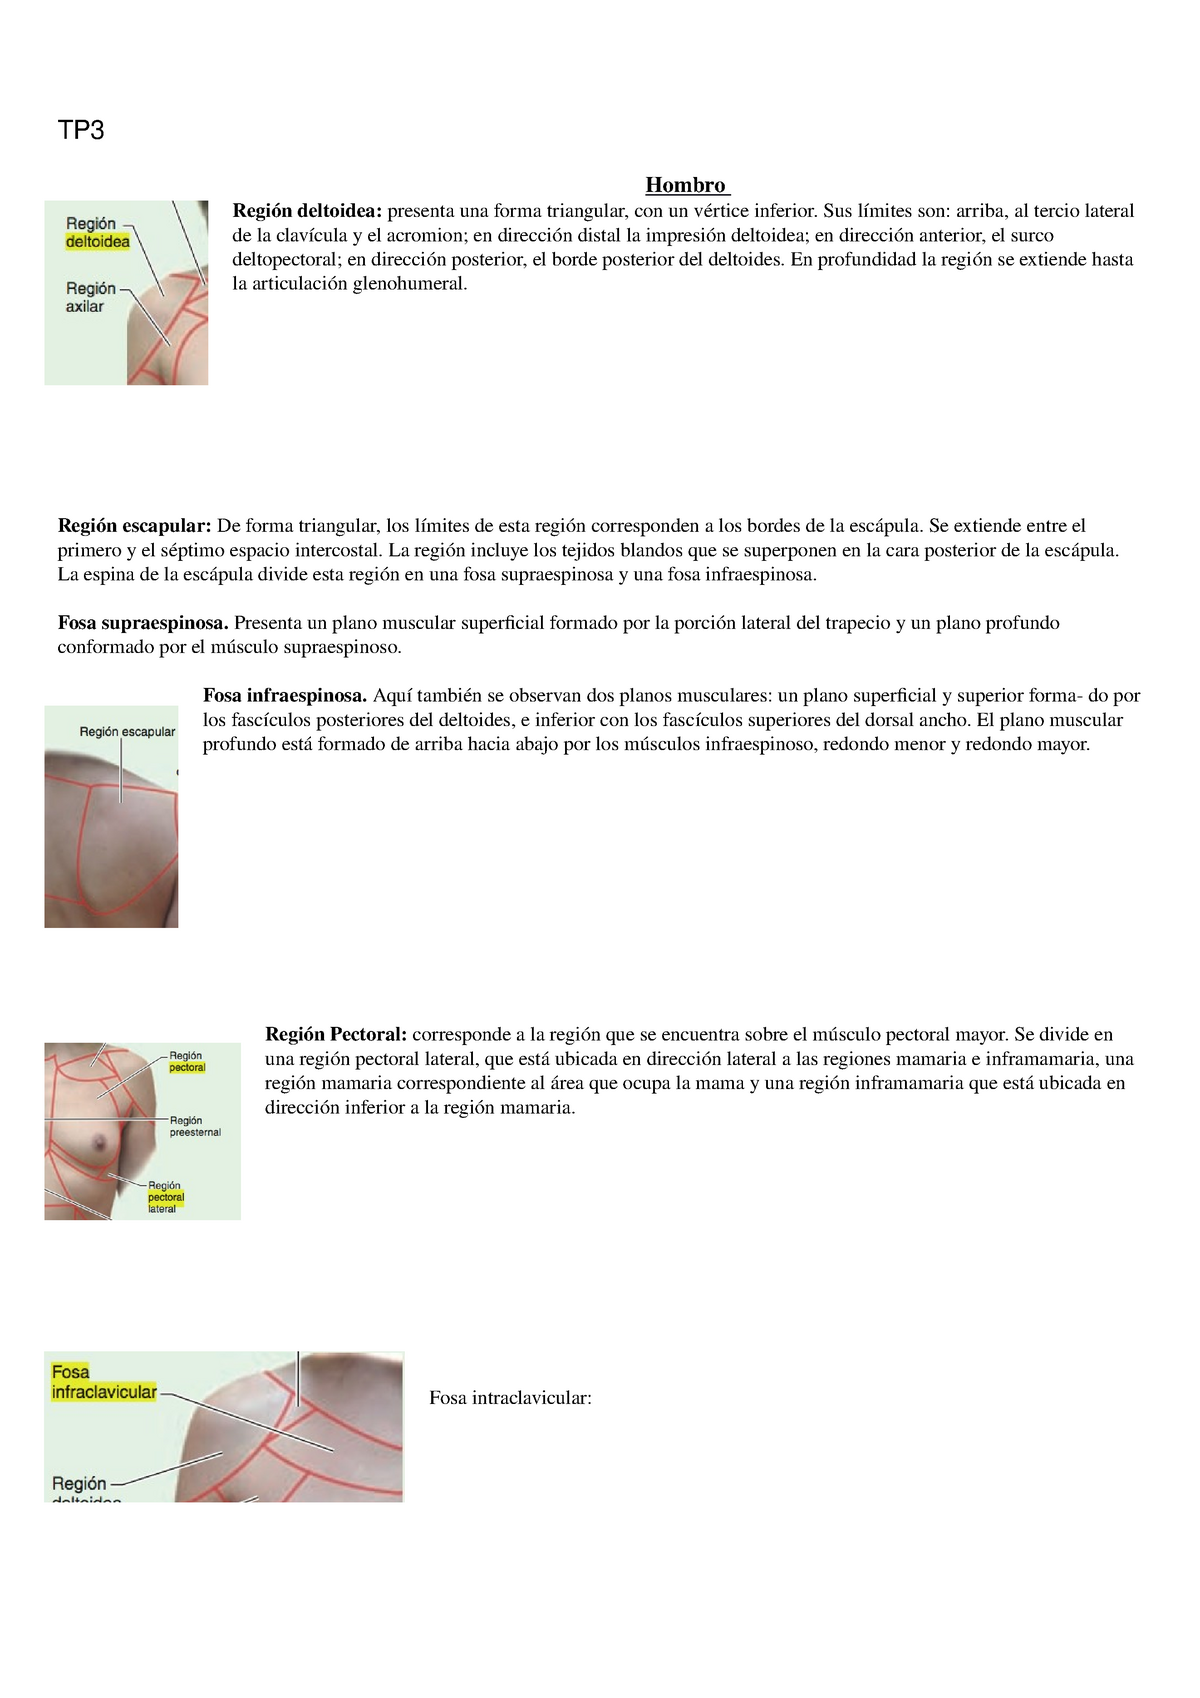 Resumen De Regiones Escapular Deltoidea Infraclavicular Y Pectoral Hombro Axila Plexo